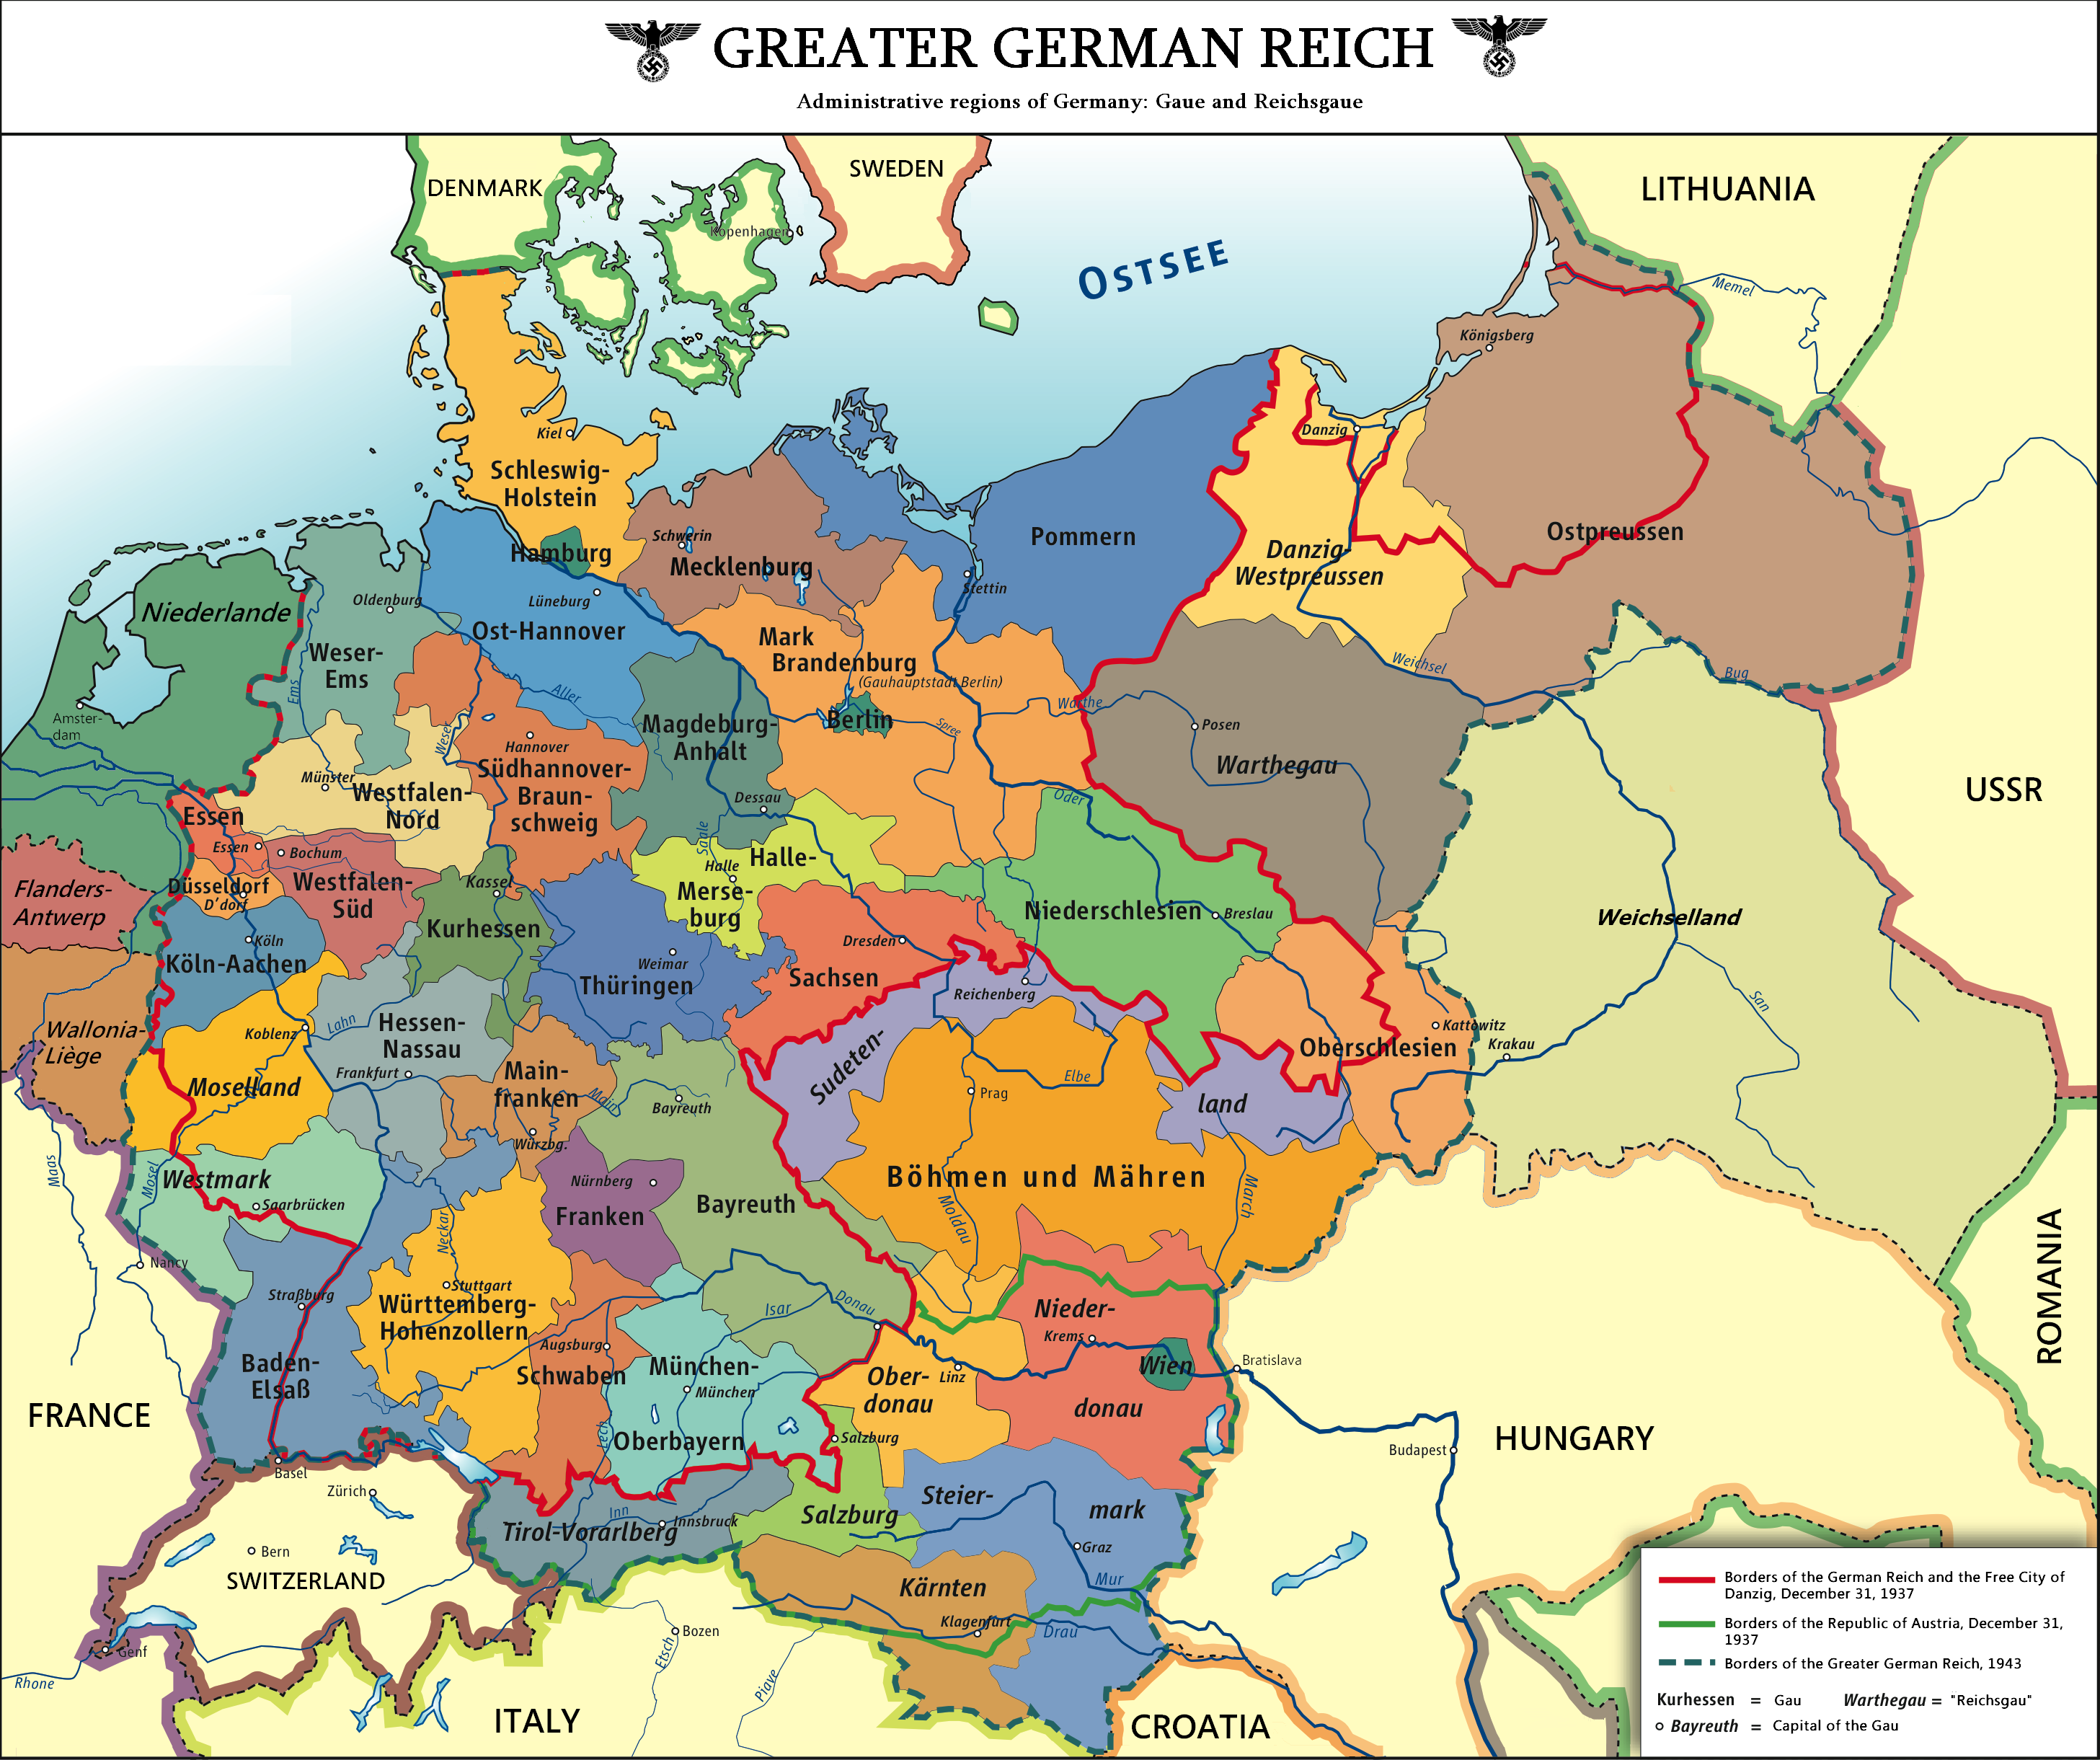 Greater German Reich (Deutschland Siegt) - Alternative History